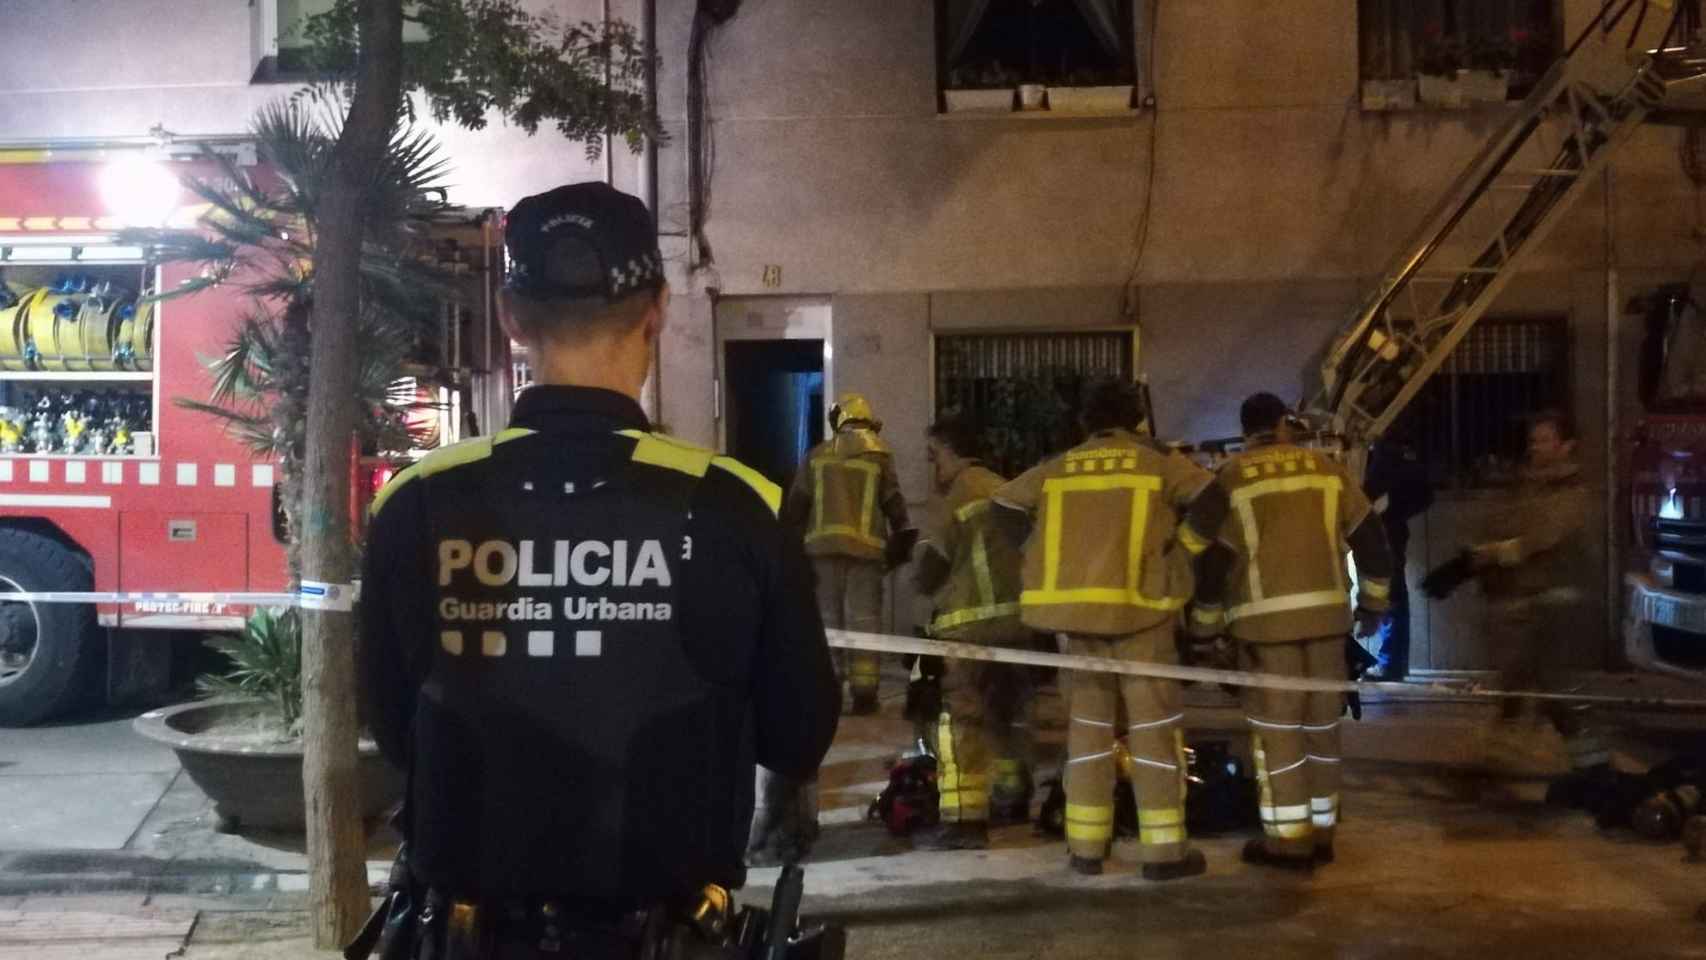 2 heridos en menos de 1 día por sendos incendios en Badalona. El último, en el barrio de Puigfred / GUÀRDIA URBANA DE BADALONA